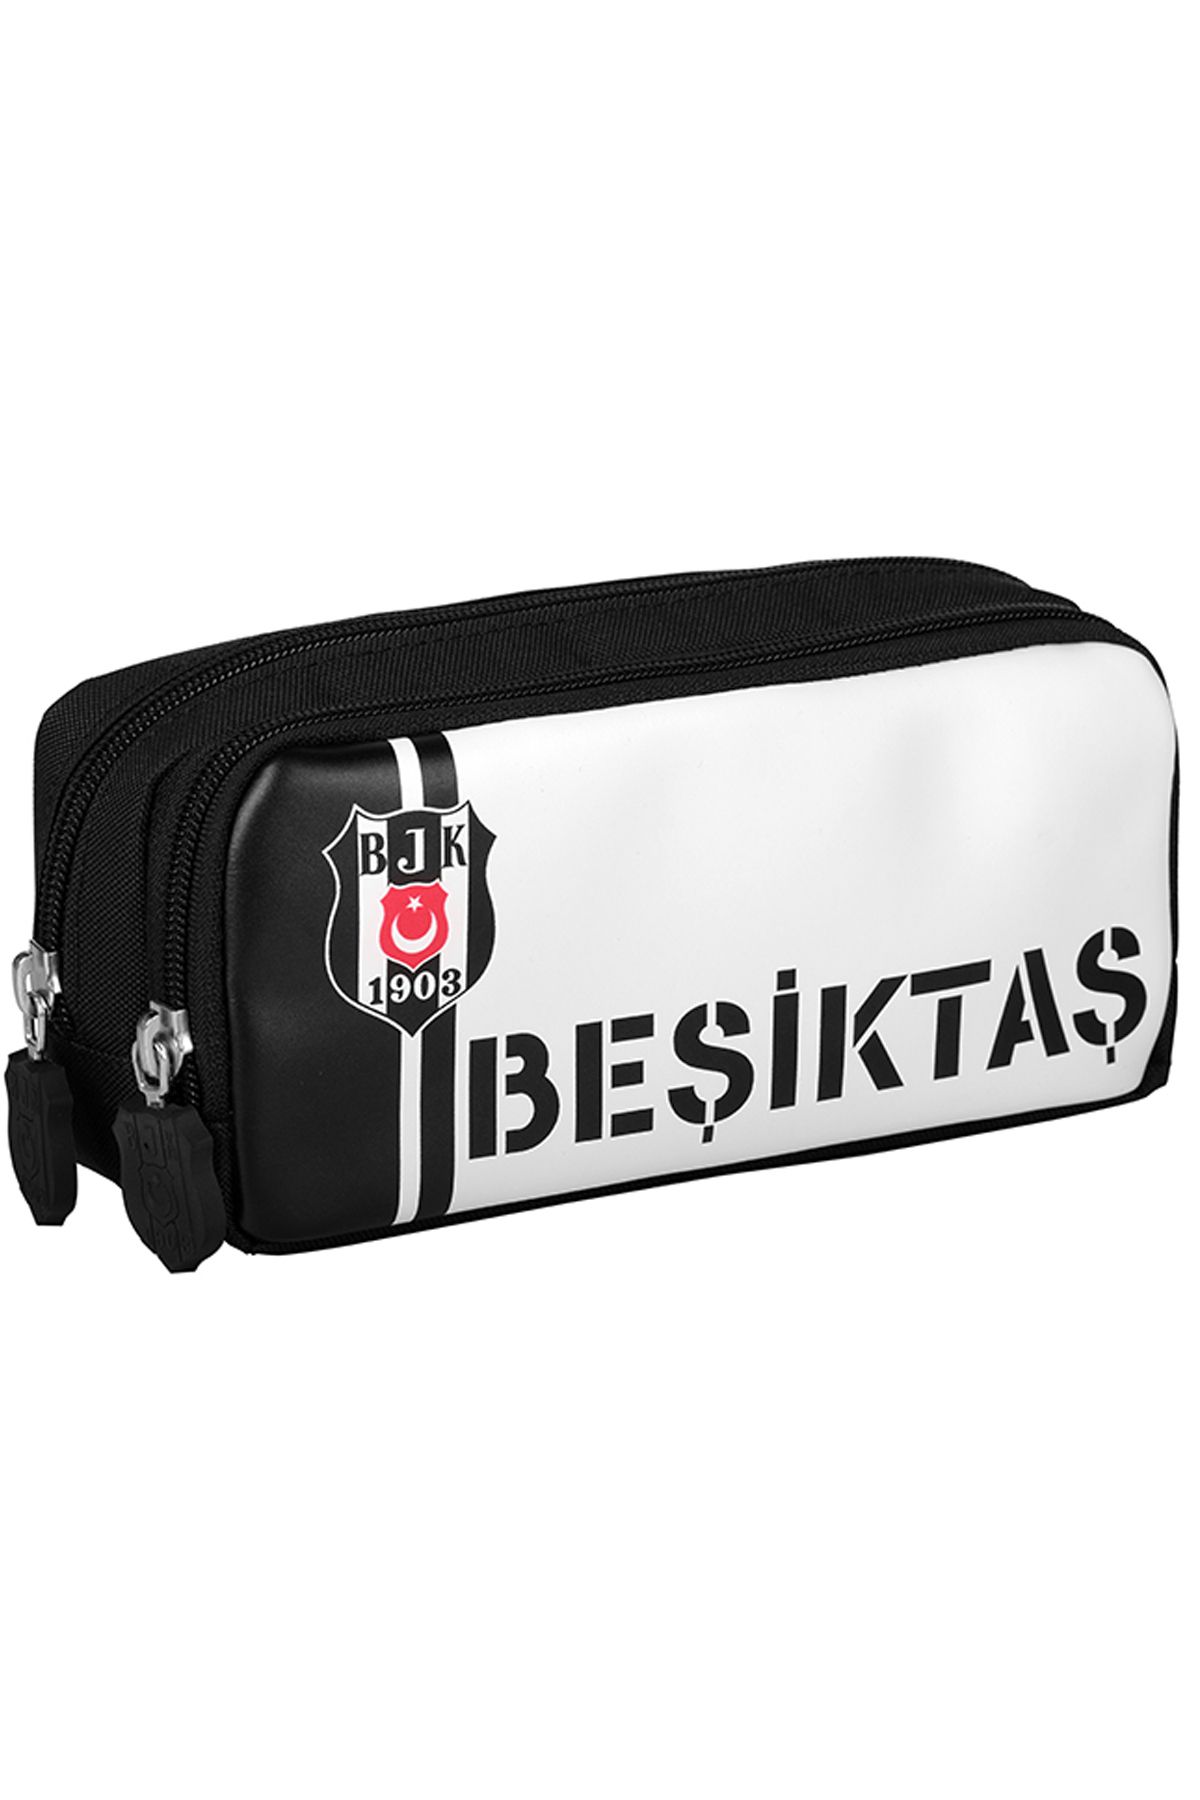 Beşiktaş ME COLLECTION Lisanslı Siyah Kalemlik 24351 Okul Kalem Çantası